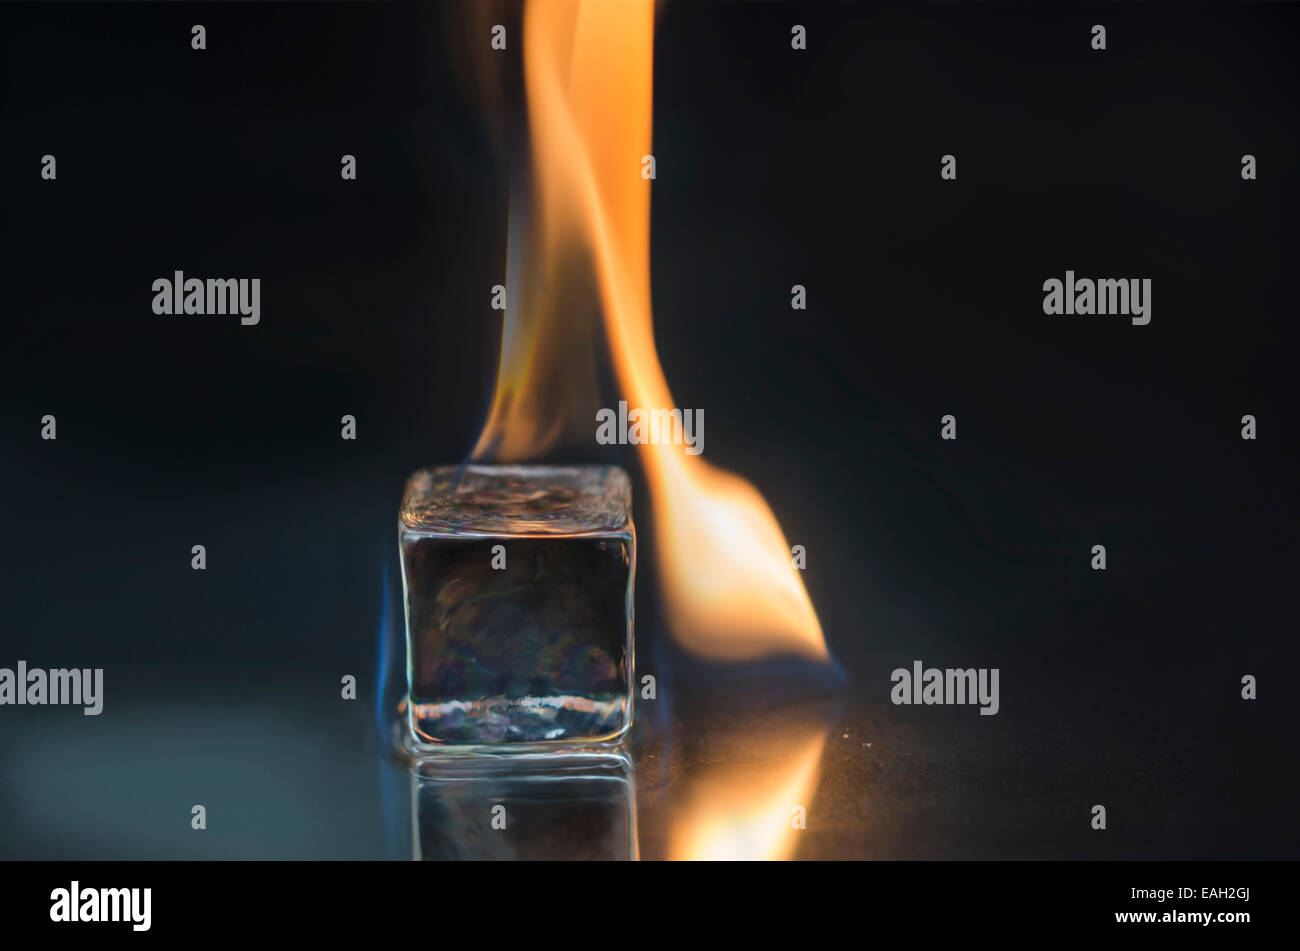 Burning ice cube on a shiny surface Stock Photo